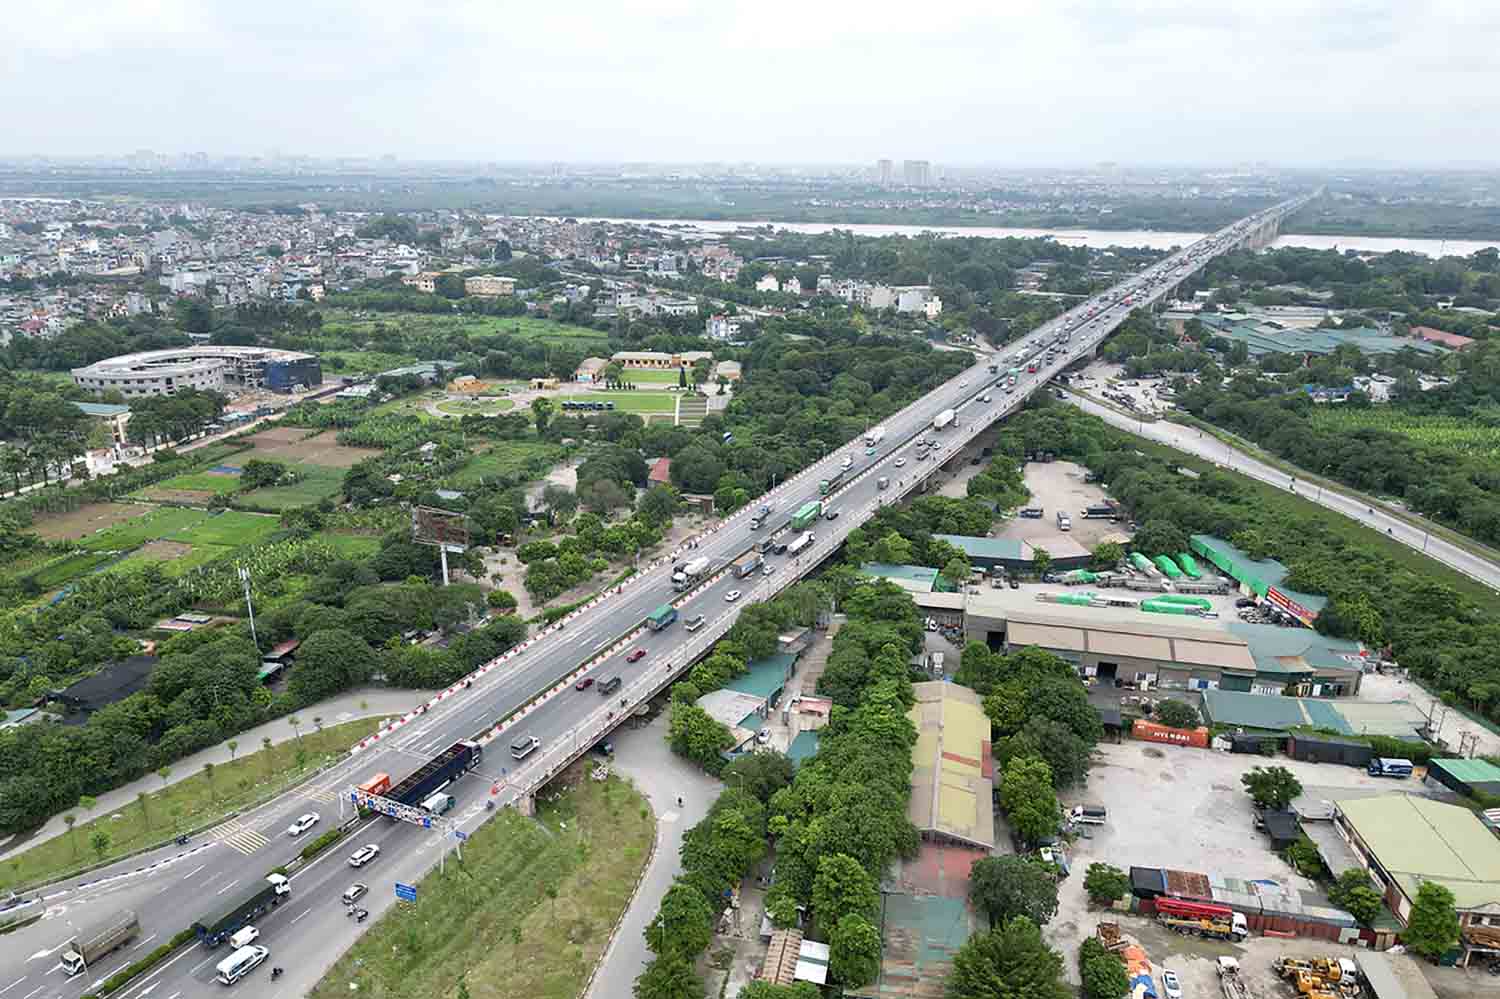 Năm 2007, Hà Nội khánh thành cầu Thanh Trì nối quận Hoàng Mai với Long Biên. Nằm ở cửa ngõ phía Bắc thủ đô, cầu Thanh Trì dài hơn 3 km,